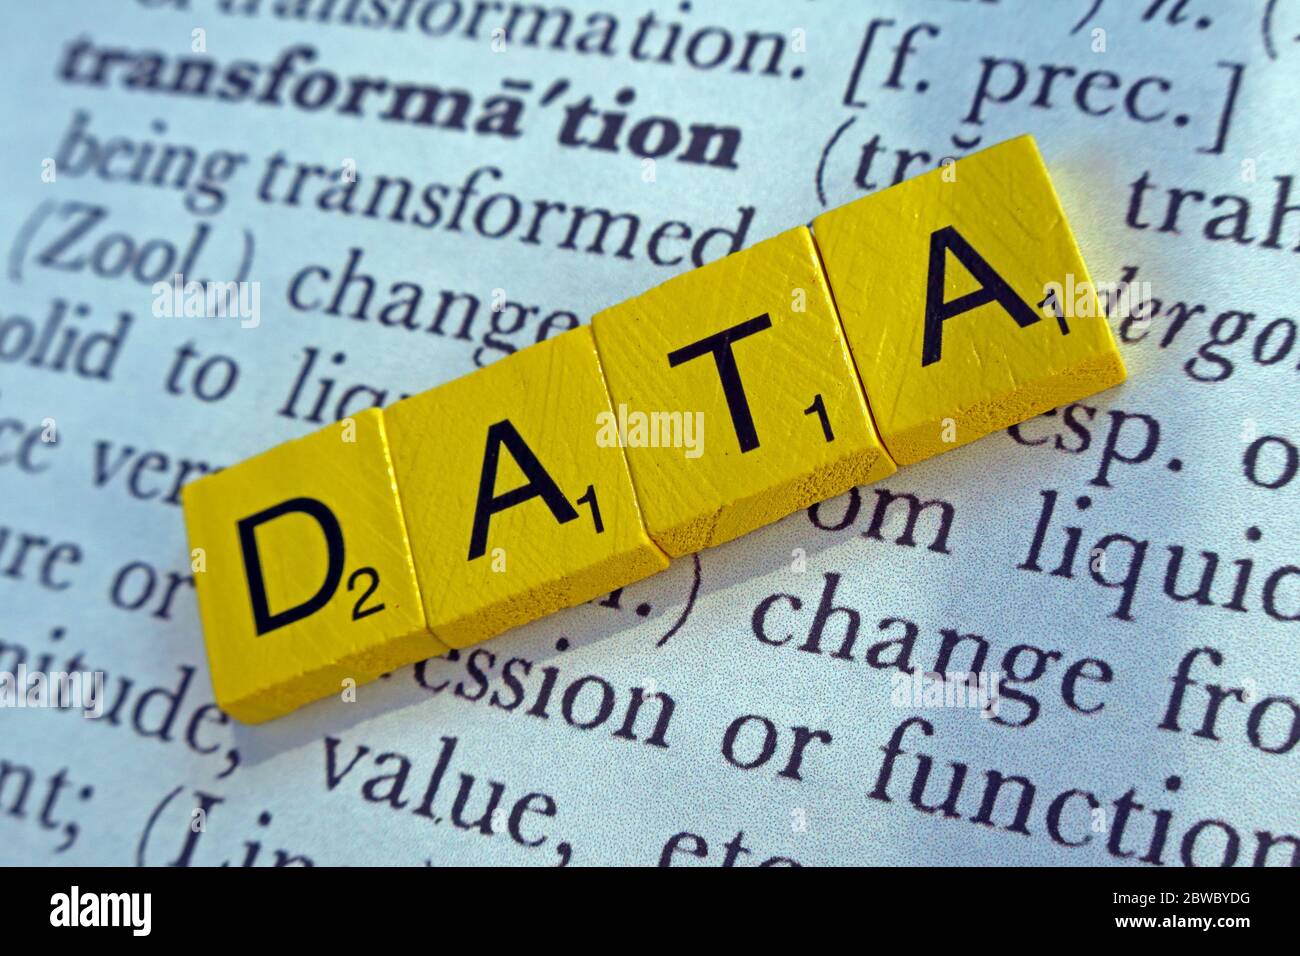 Transformation von Daten,Datenumwandlung, in Scrabble Letters Stockfoto